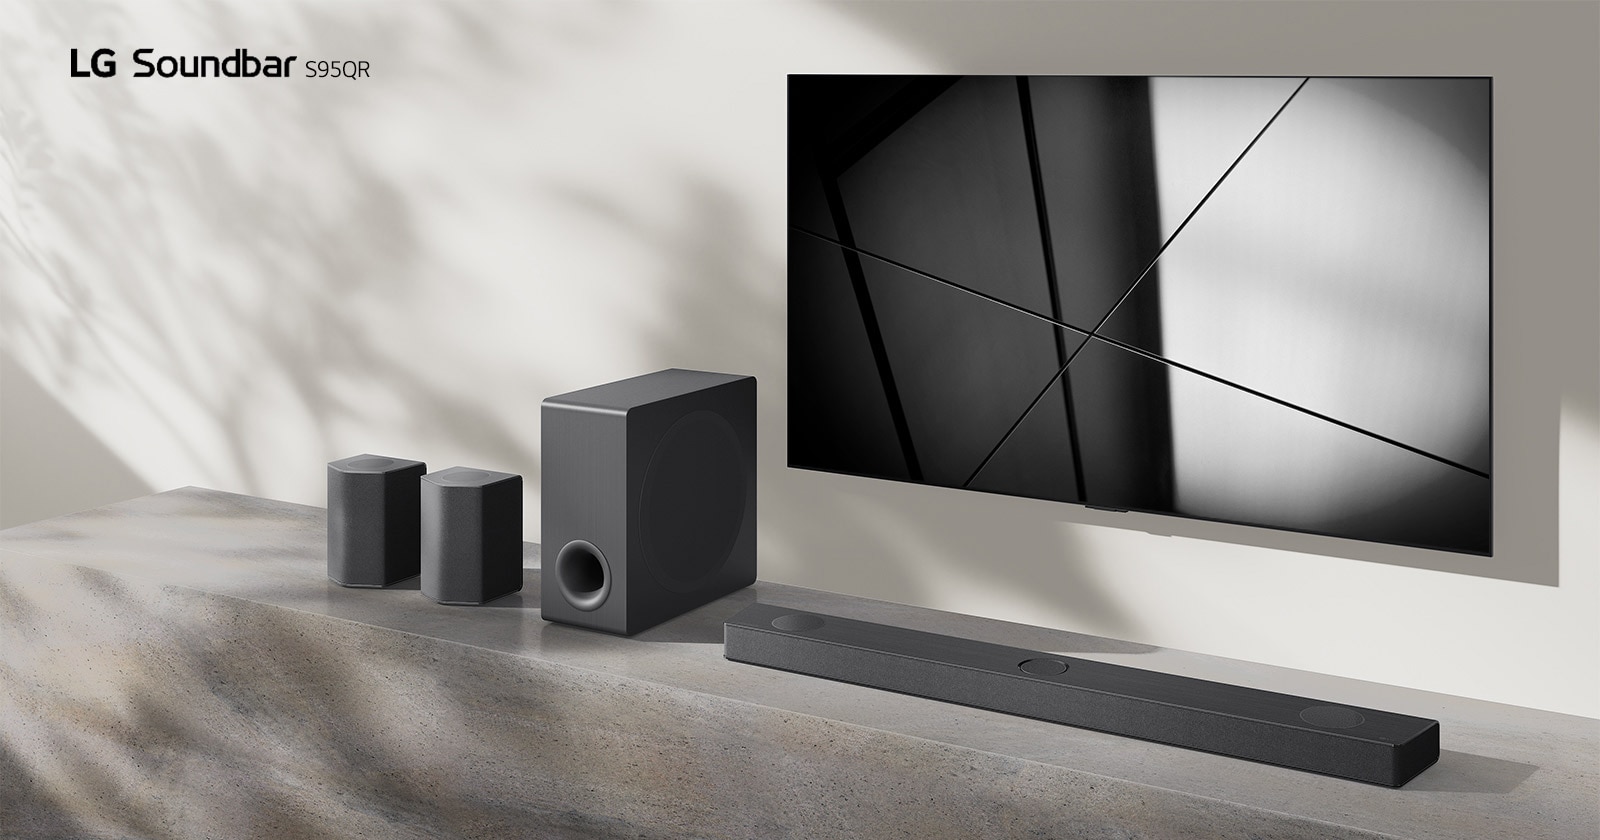 Die LG Soundbar DS95QR und ein LG TV sind zusammen in einem Wohnzimmer aufgestellt. Der Fernseher ist eingeschaltet und zeigt ein Schwarzweißbild an.